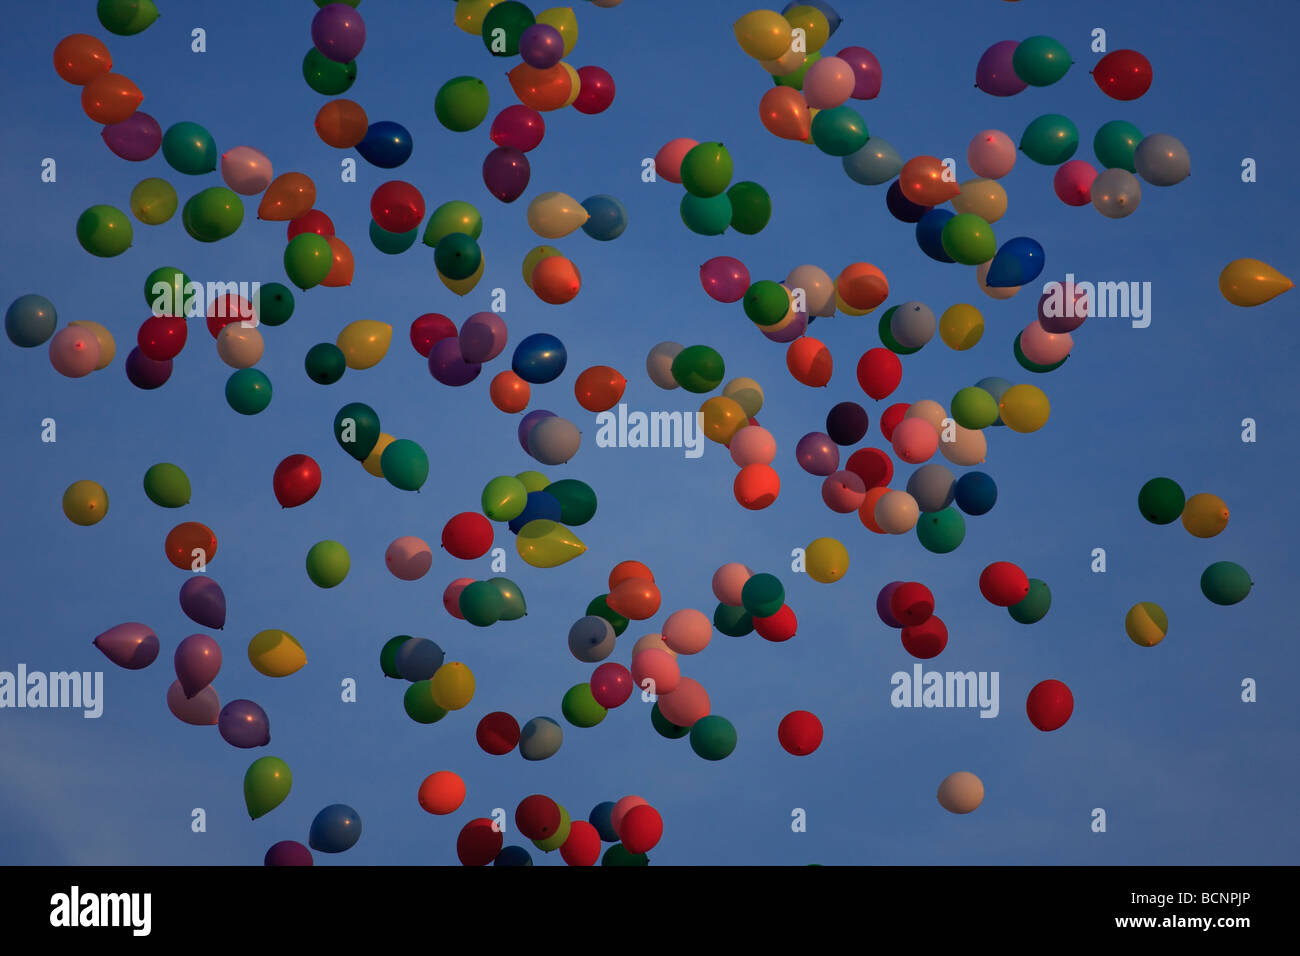 Los globos llenos de helio flotando contra un cielo azul. Foto de stock